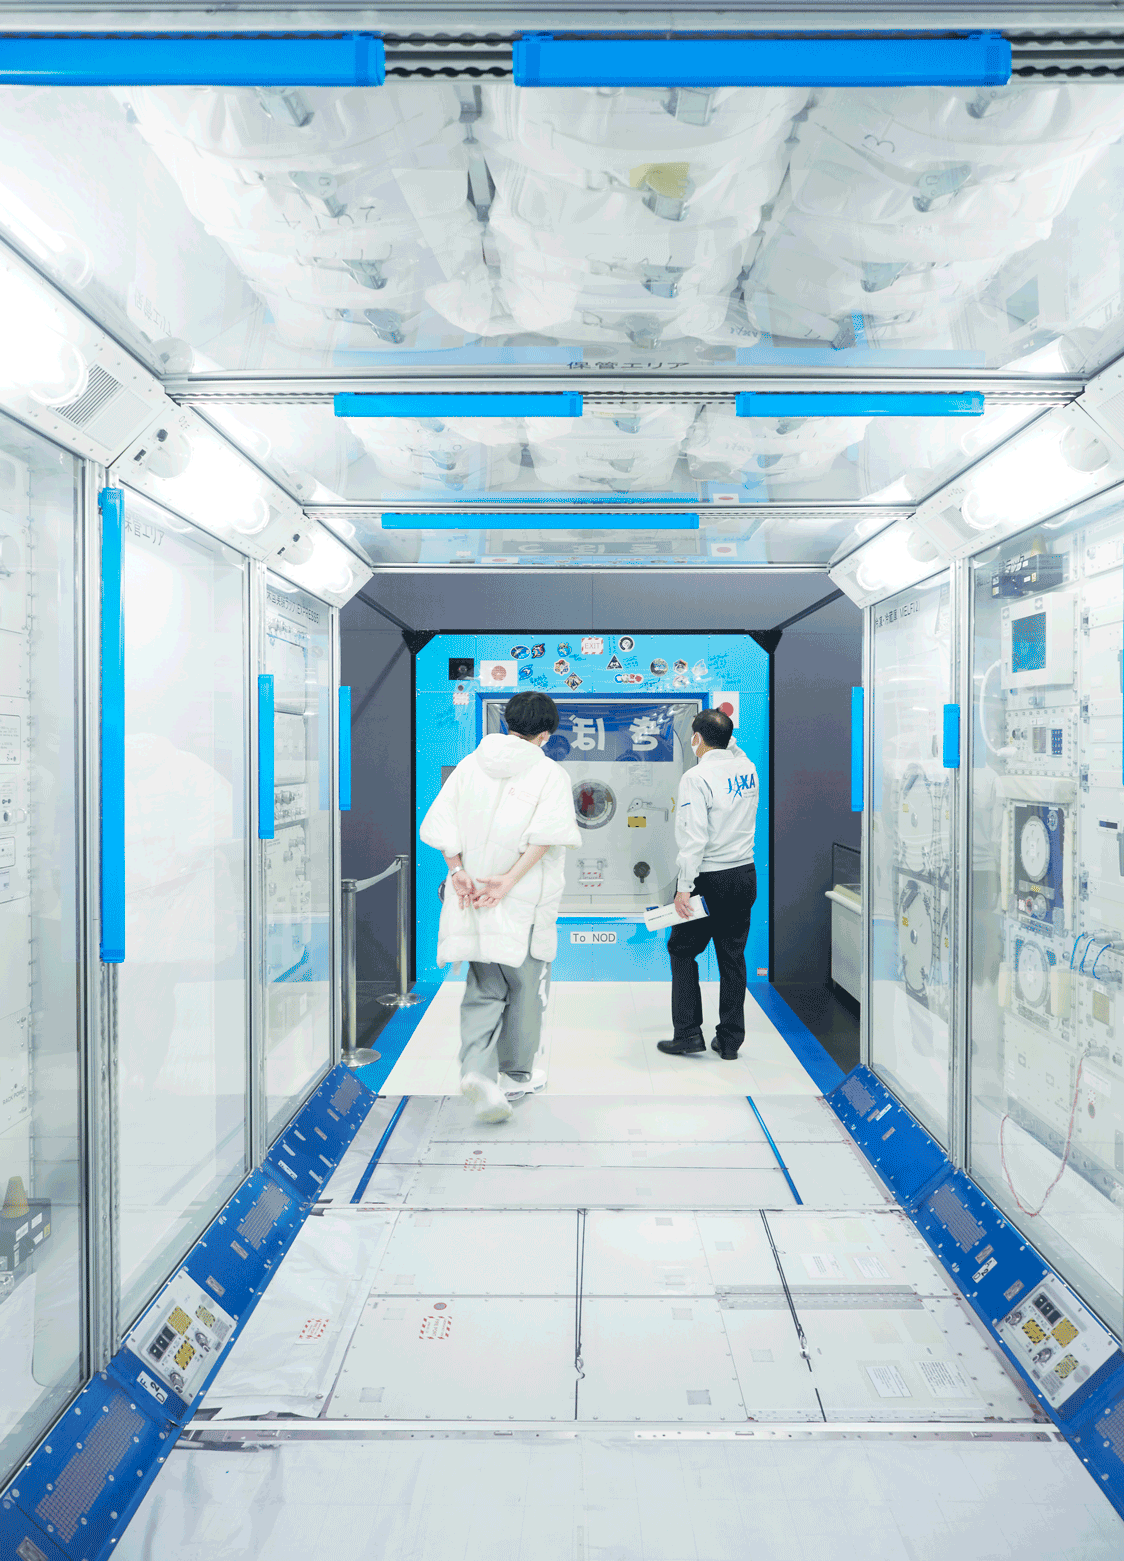 「スペースドーム」の中にある、国際宇宙ステーション「きぼう」日本実験棟の実物大モデル。JAXAの宇宙飛行士は、筑波宇宙センターなどでの訓練の後、宇宙でのミッションを行っている。